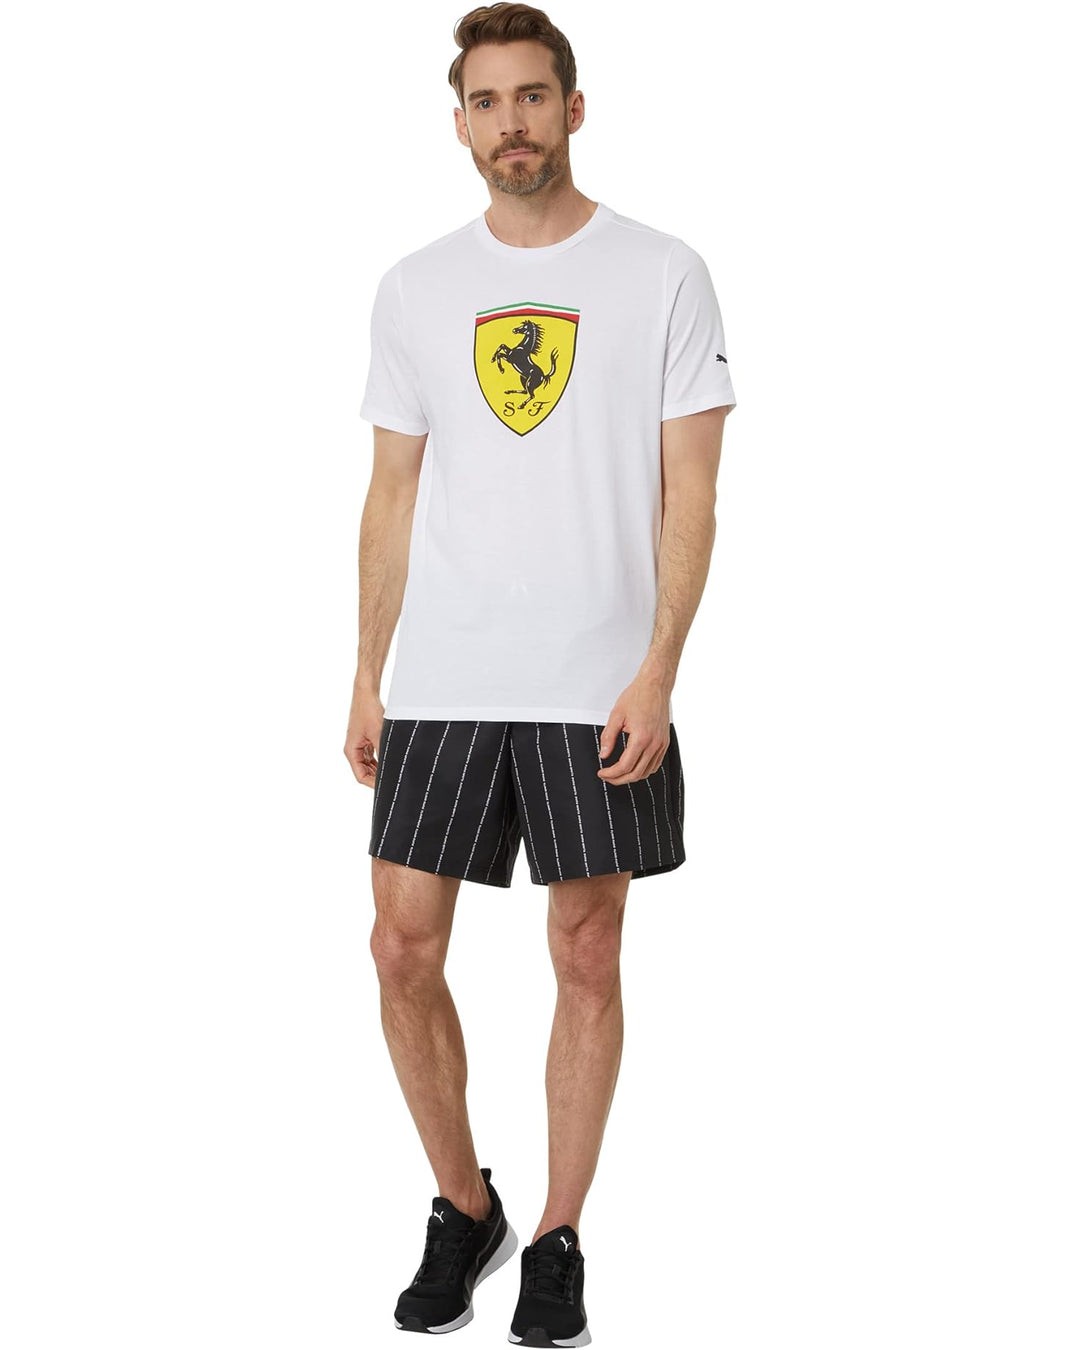 Camiseta Scuderia Ferrari Small Shield. Color blanco